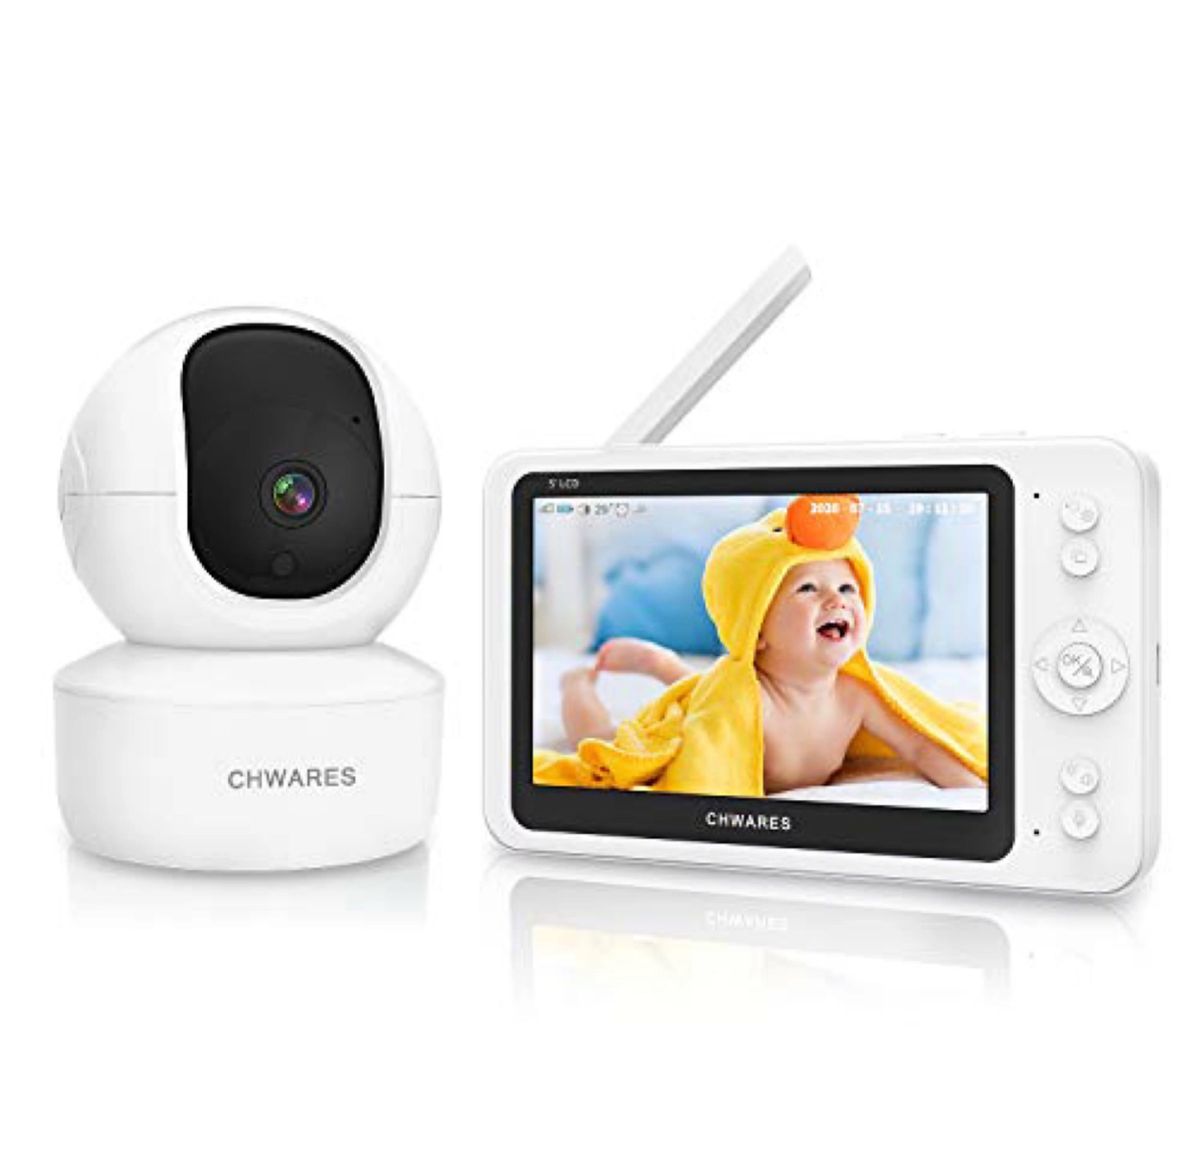 CHWARES ベビーモニター 見守りカメラ ワイヤレス モニター付き屋内カメラ 設定不要 5.5インチスクリーン 1080P 